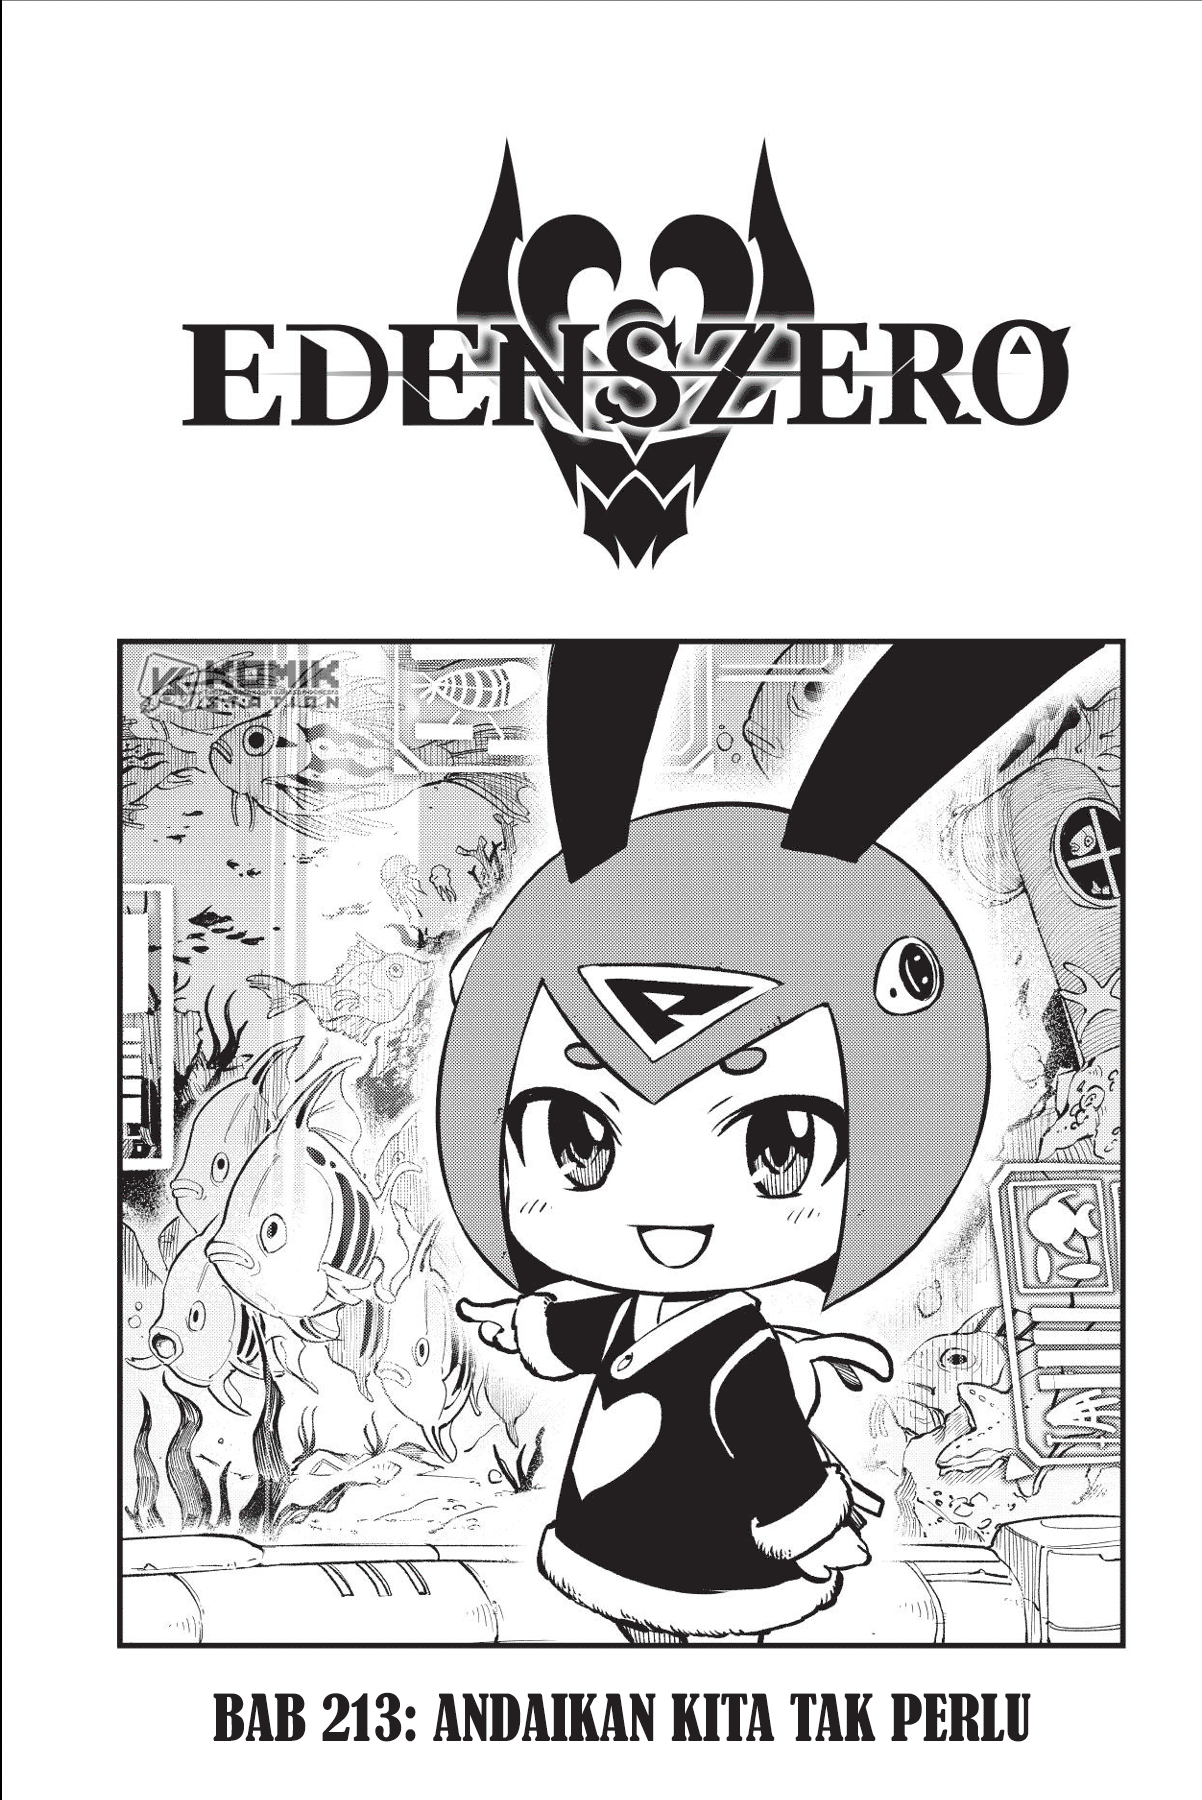 Eden’s Zero Chapter 213